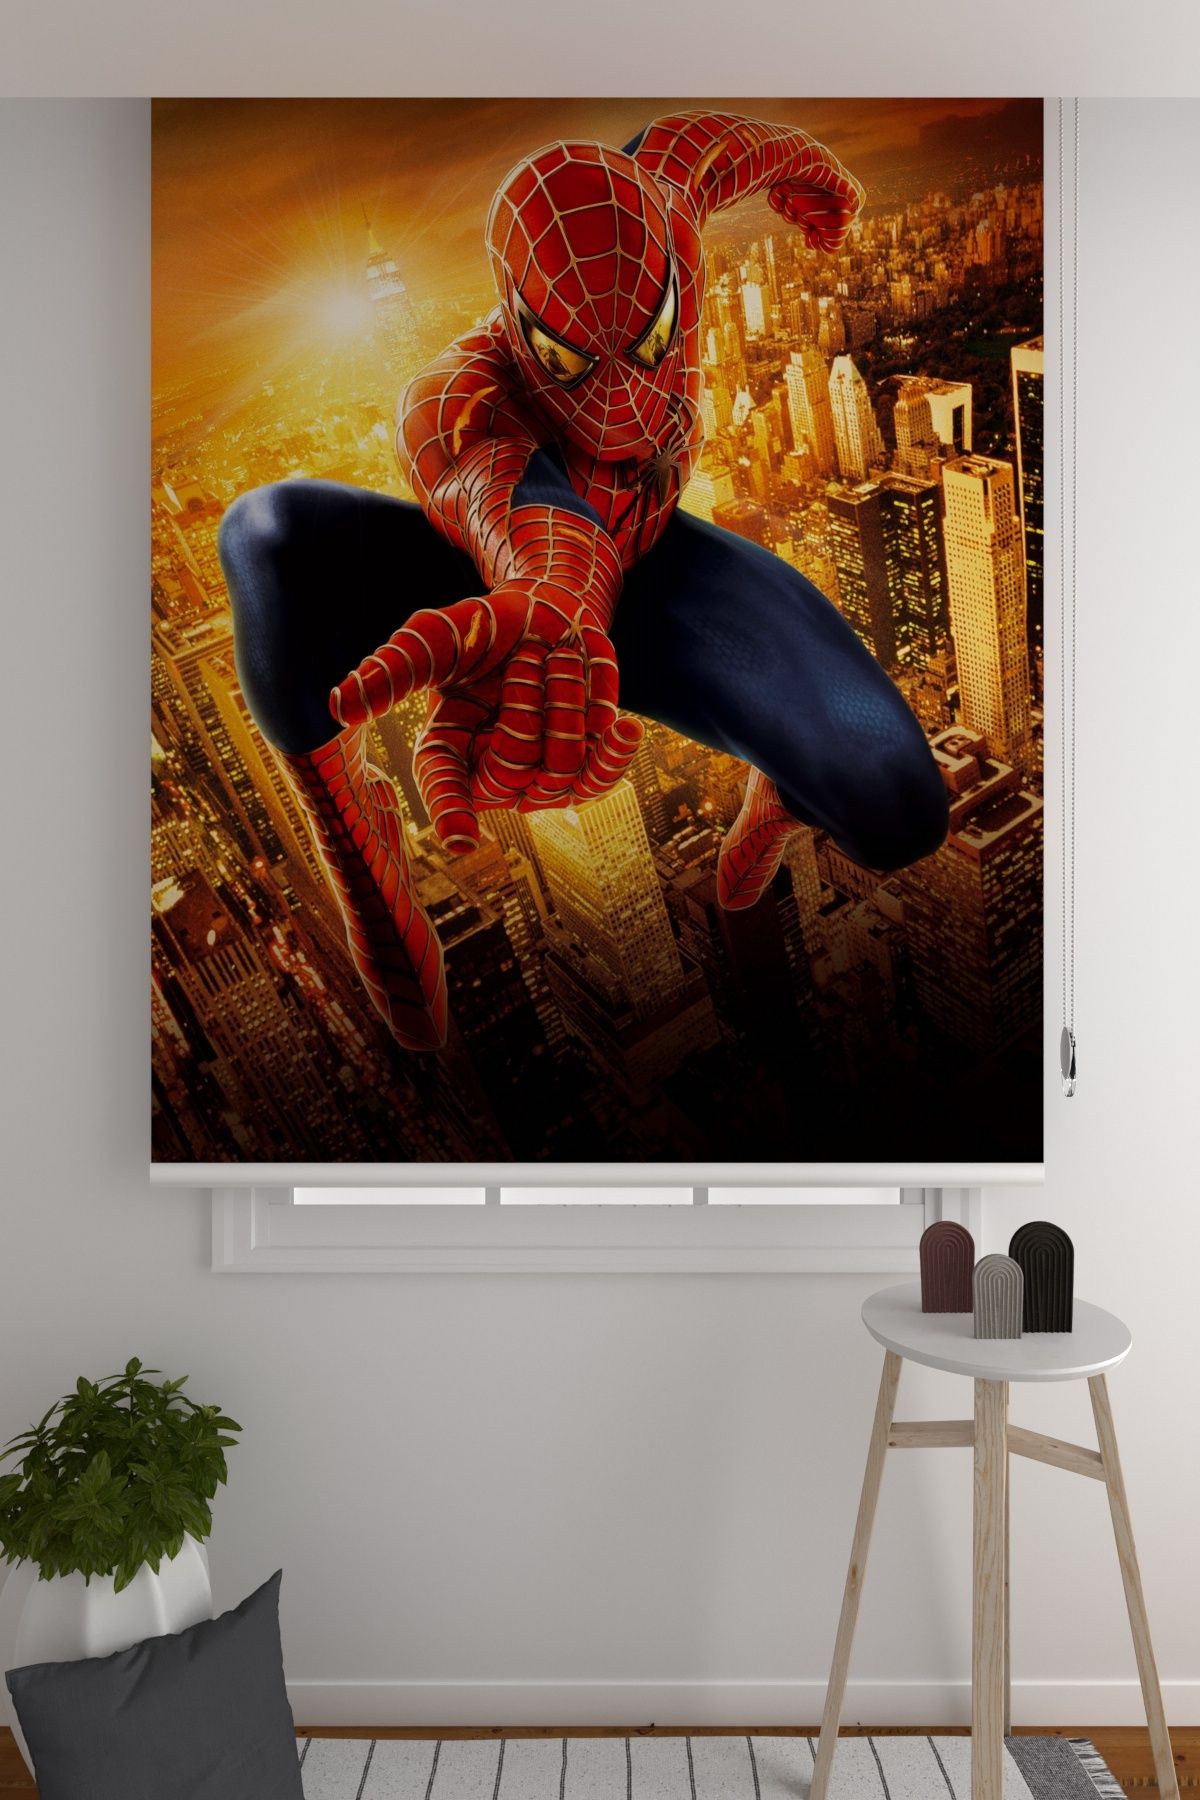 ZÜPER TEKSTİL Stor Perde Süper Kahraman Spiderman Örümcek Adam Çocuk Odası Stor Perde